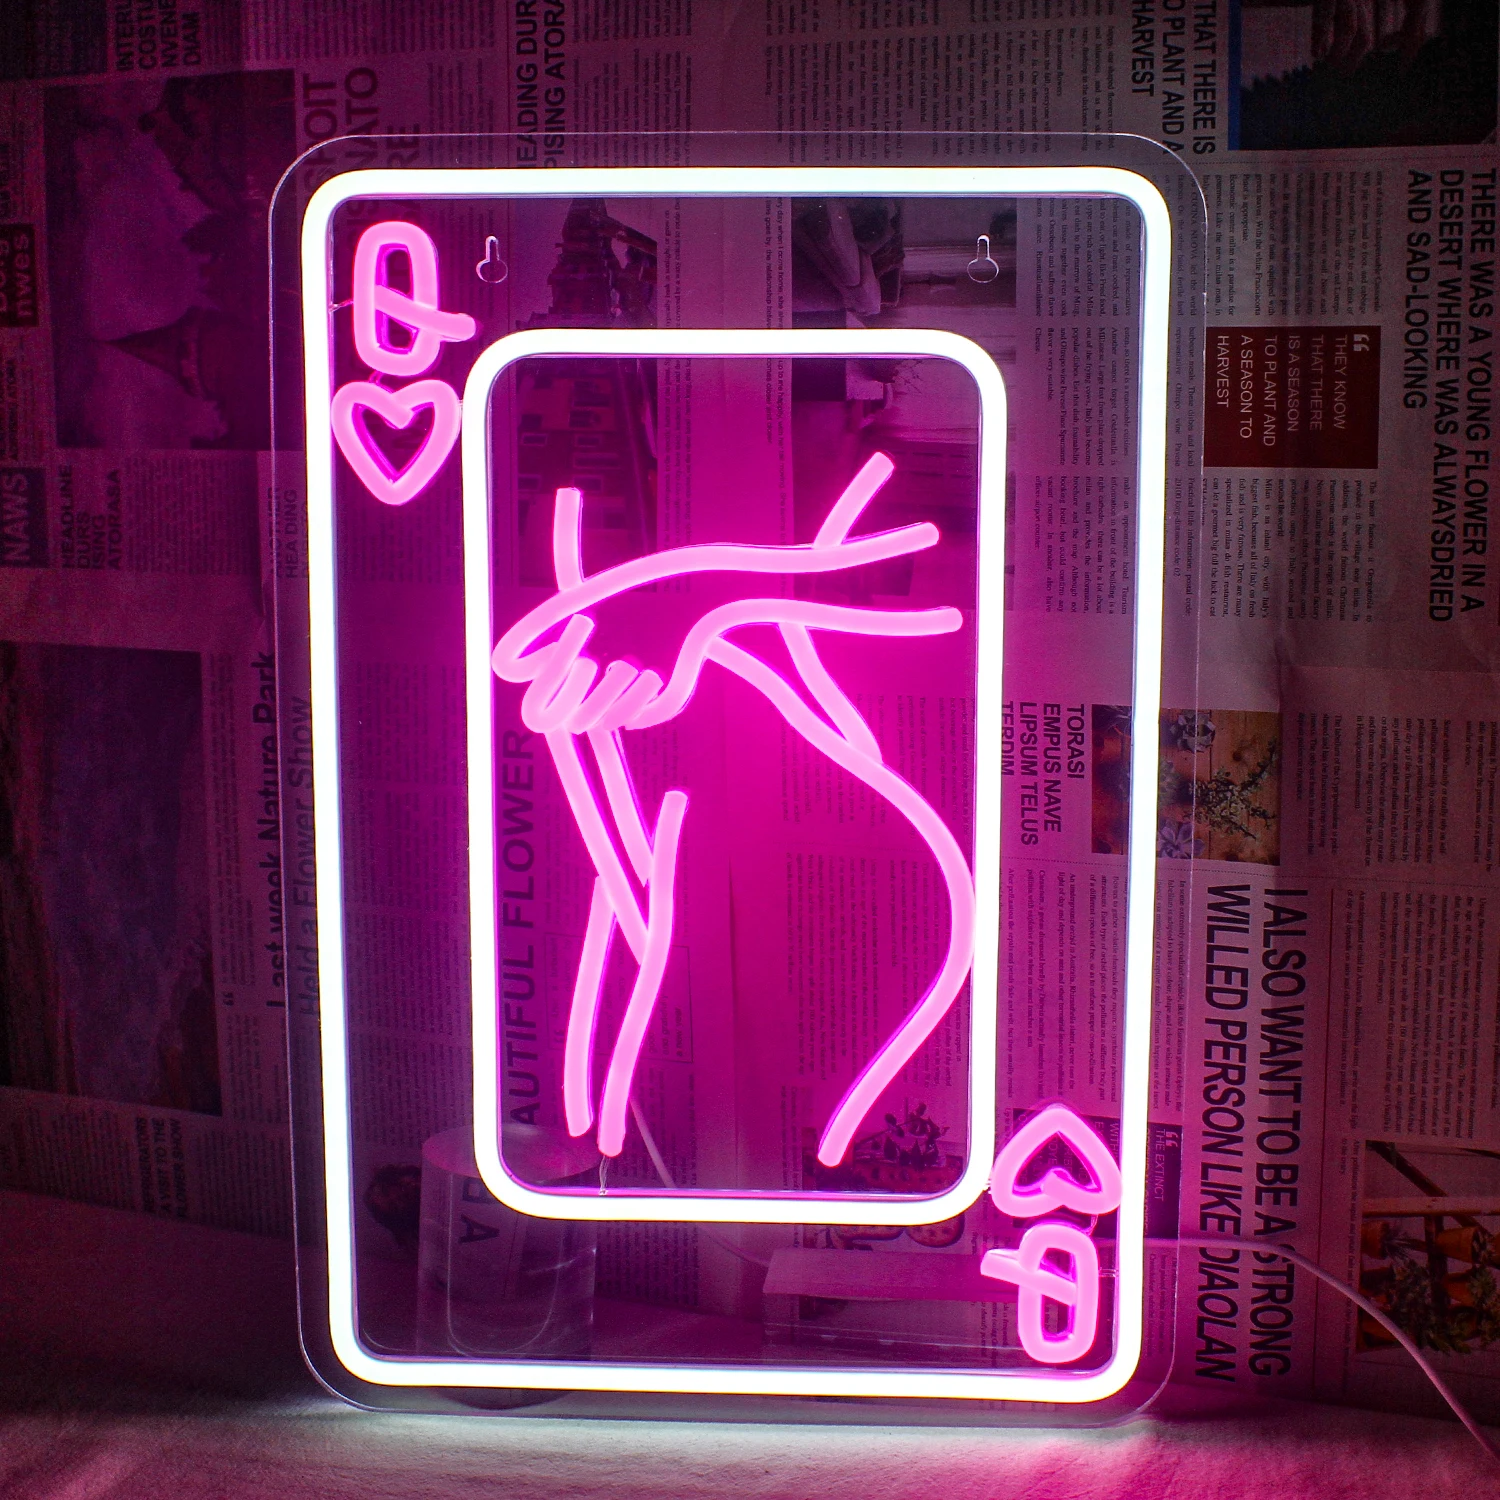 carte-da-gioco-lady-body-neon-sign-dimmerabile-poker-per-la-decorazione-della-parete-led-neon-bar-signs-man-cave-party-club-restaurant-hotel-usb-neon